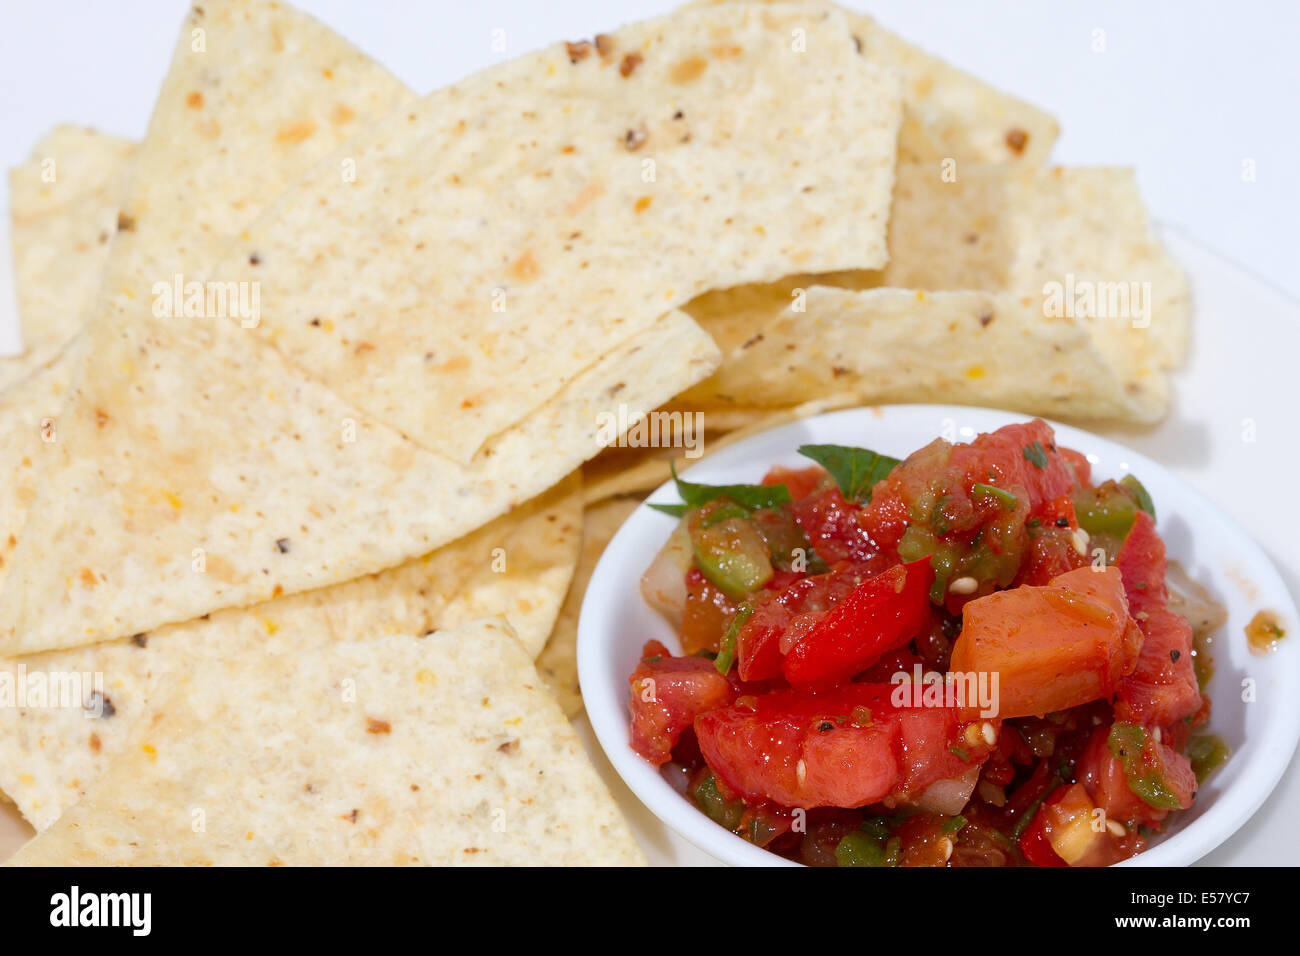 Tortilla-Chips und Salsa in eine Schüssel geben. Hintergrund ist weiß. Stockfoto